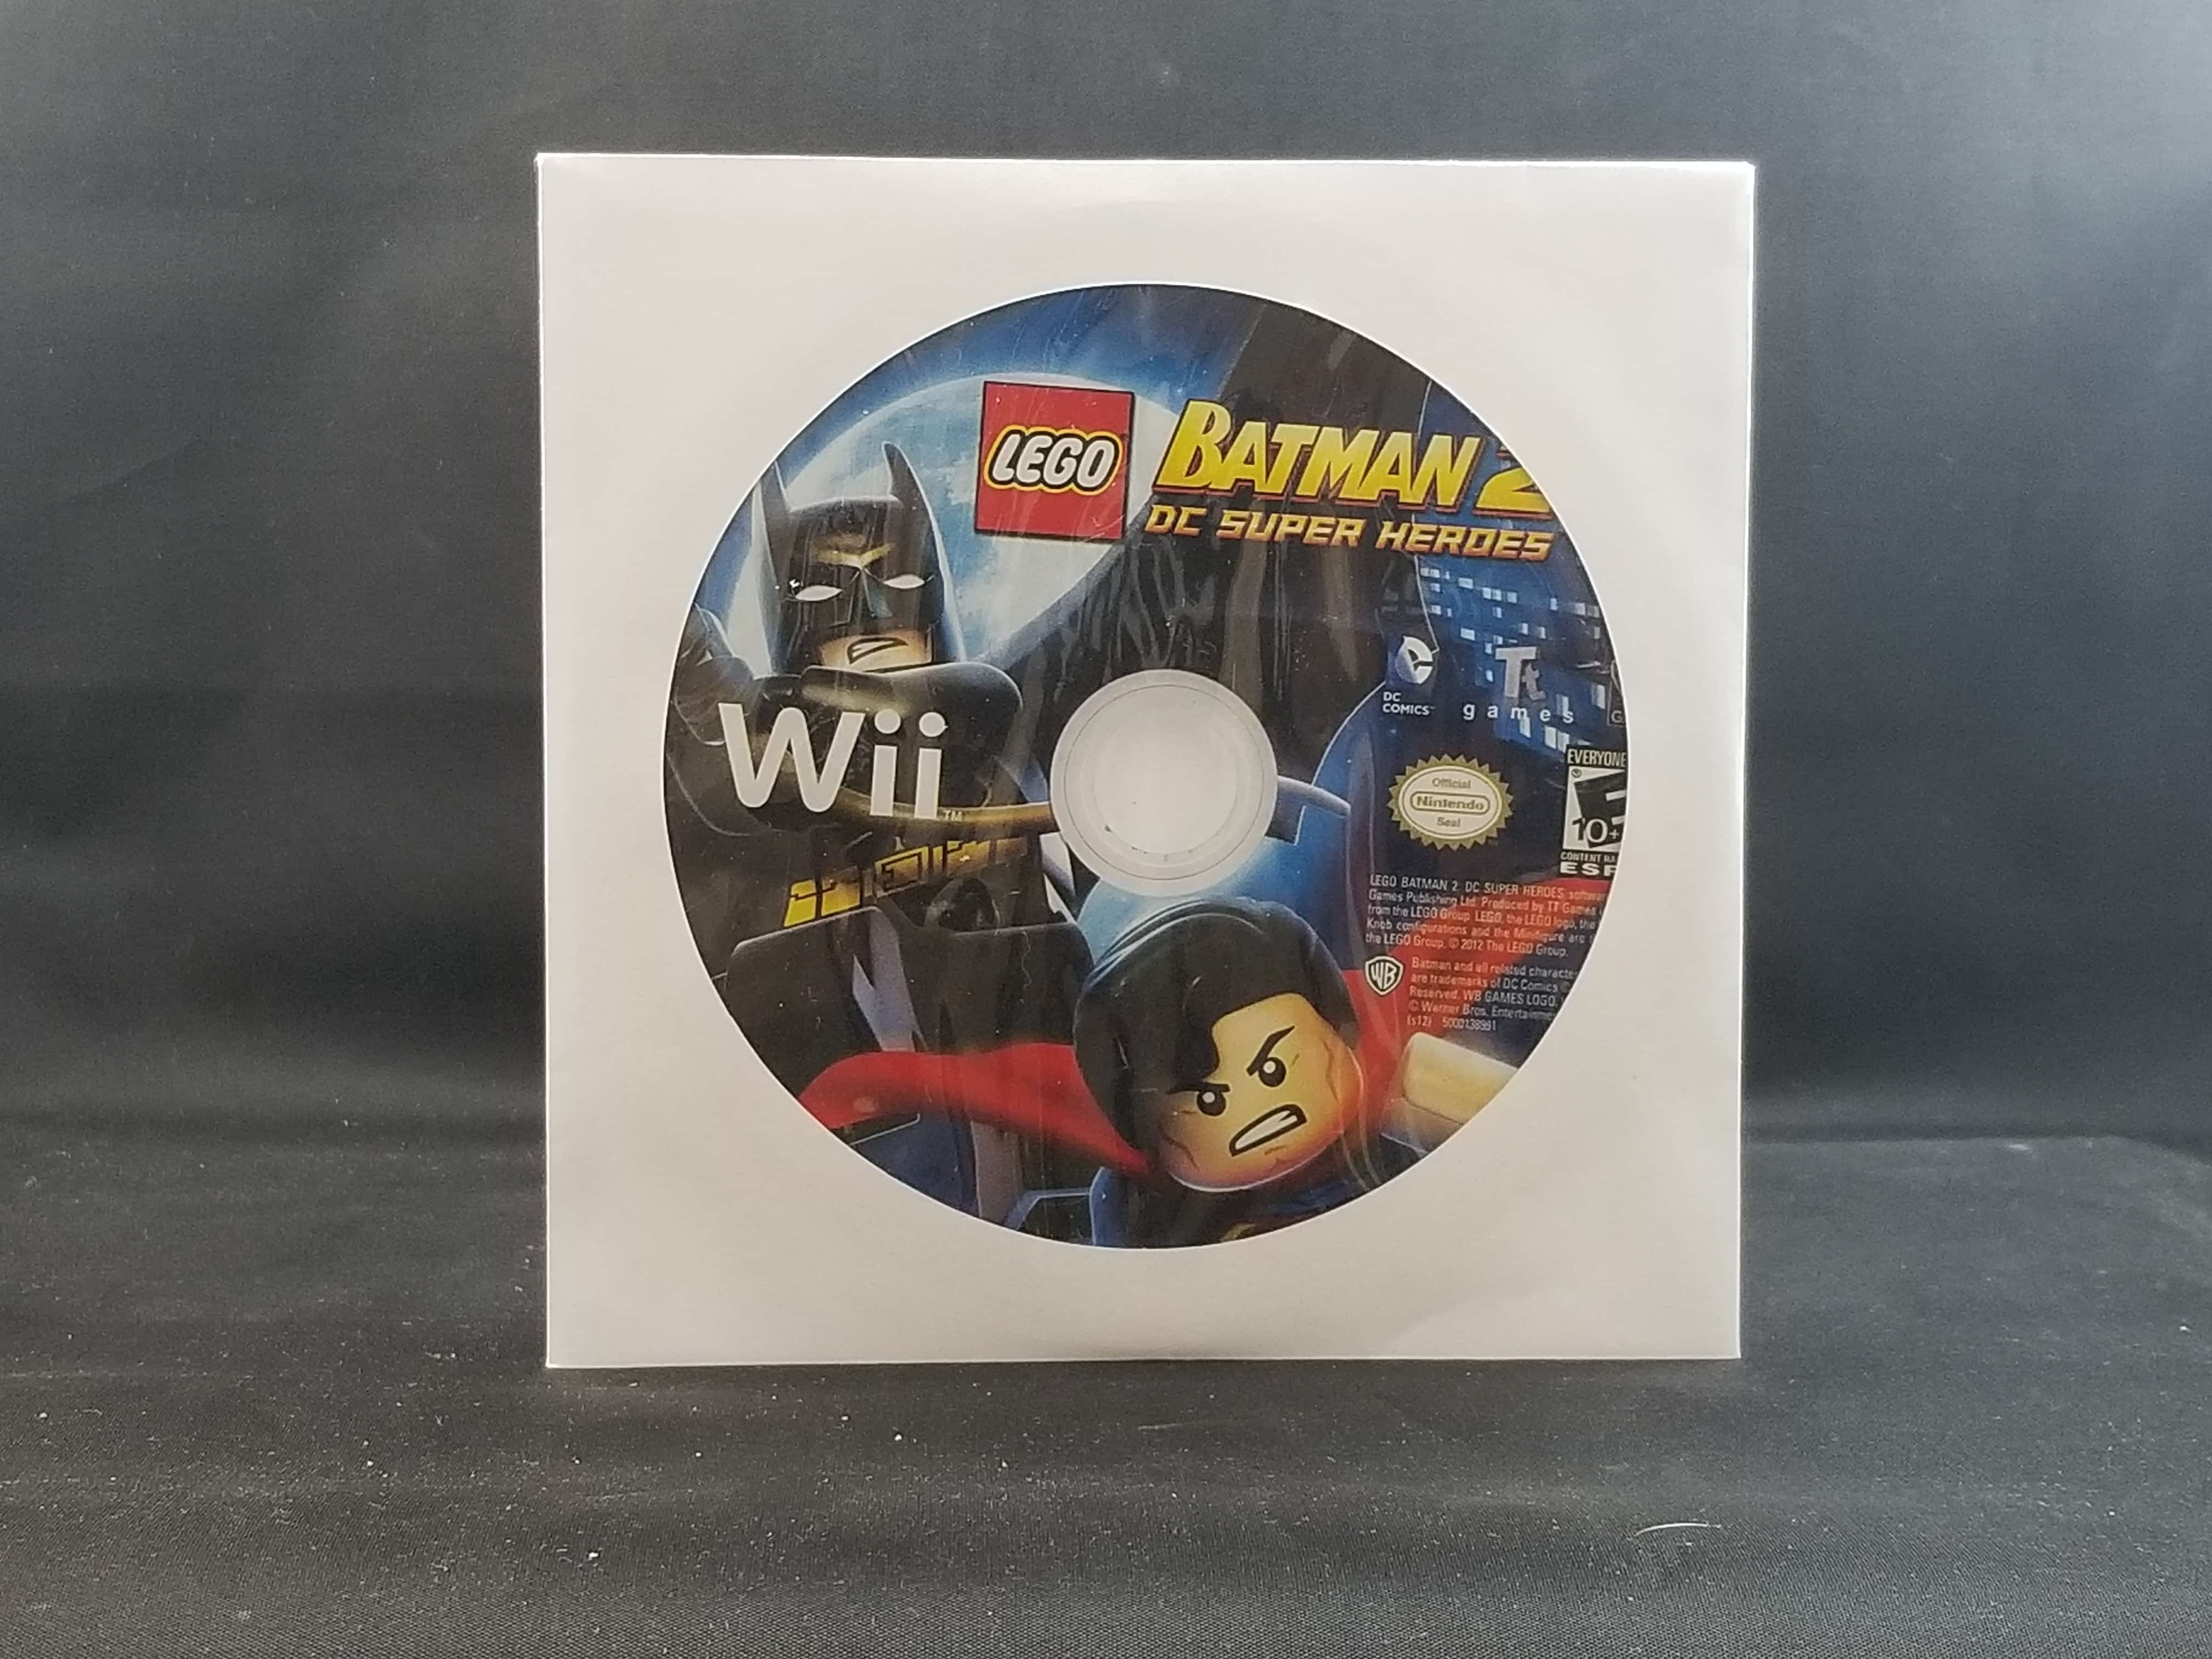 LEGO® BATMAN 2: DC Super Heroes, Wii U games, Games